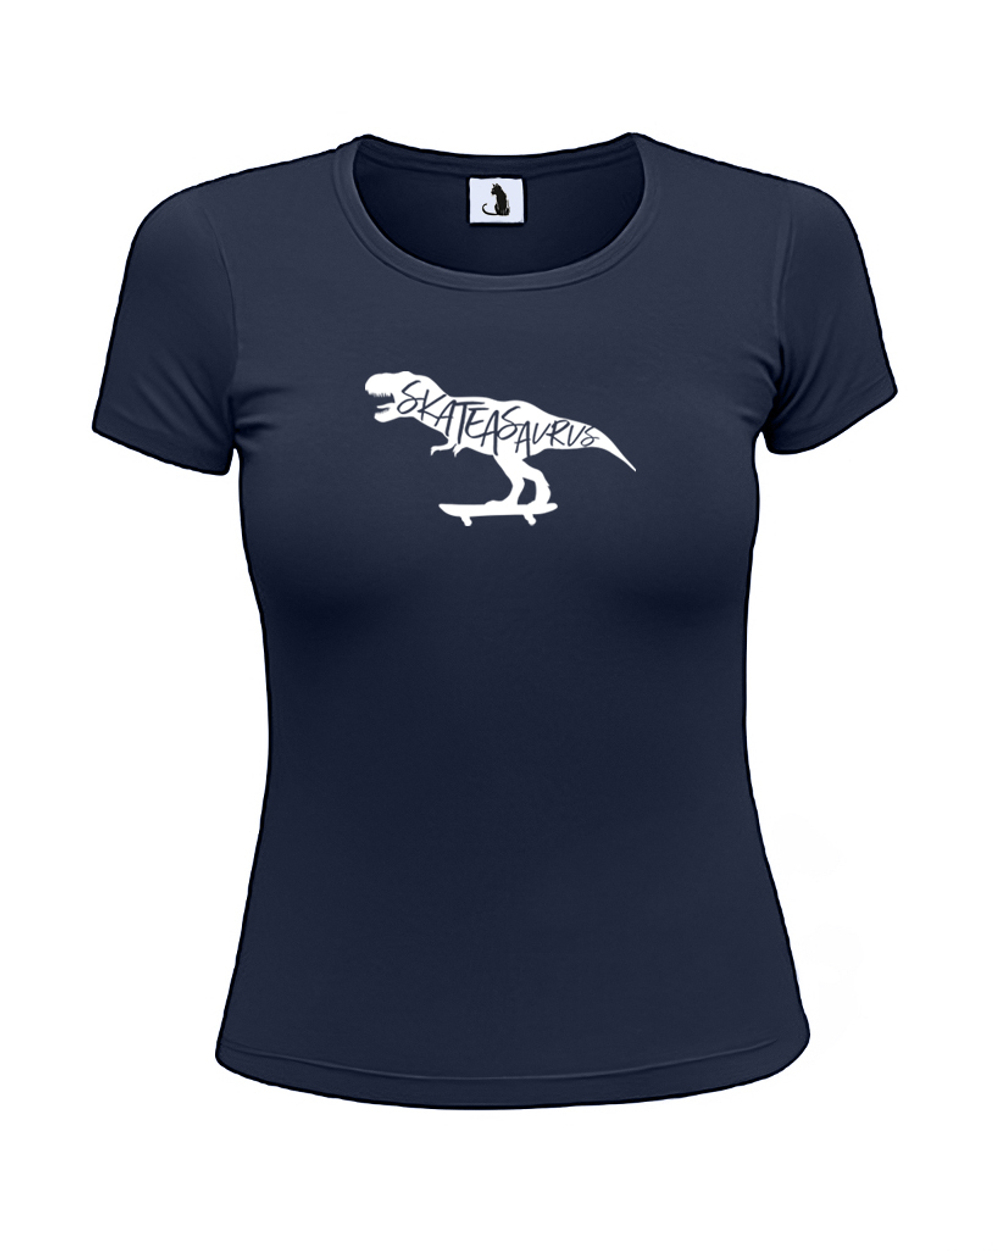 Футболка Skateasaurus женская приталенная темно-синяя с белым рисунком